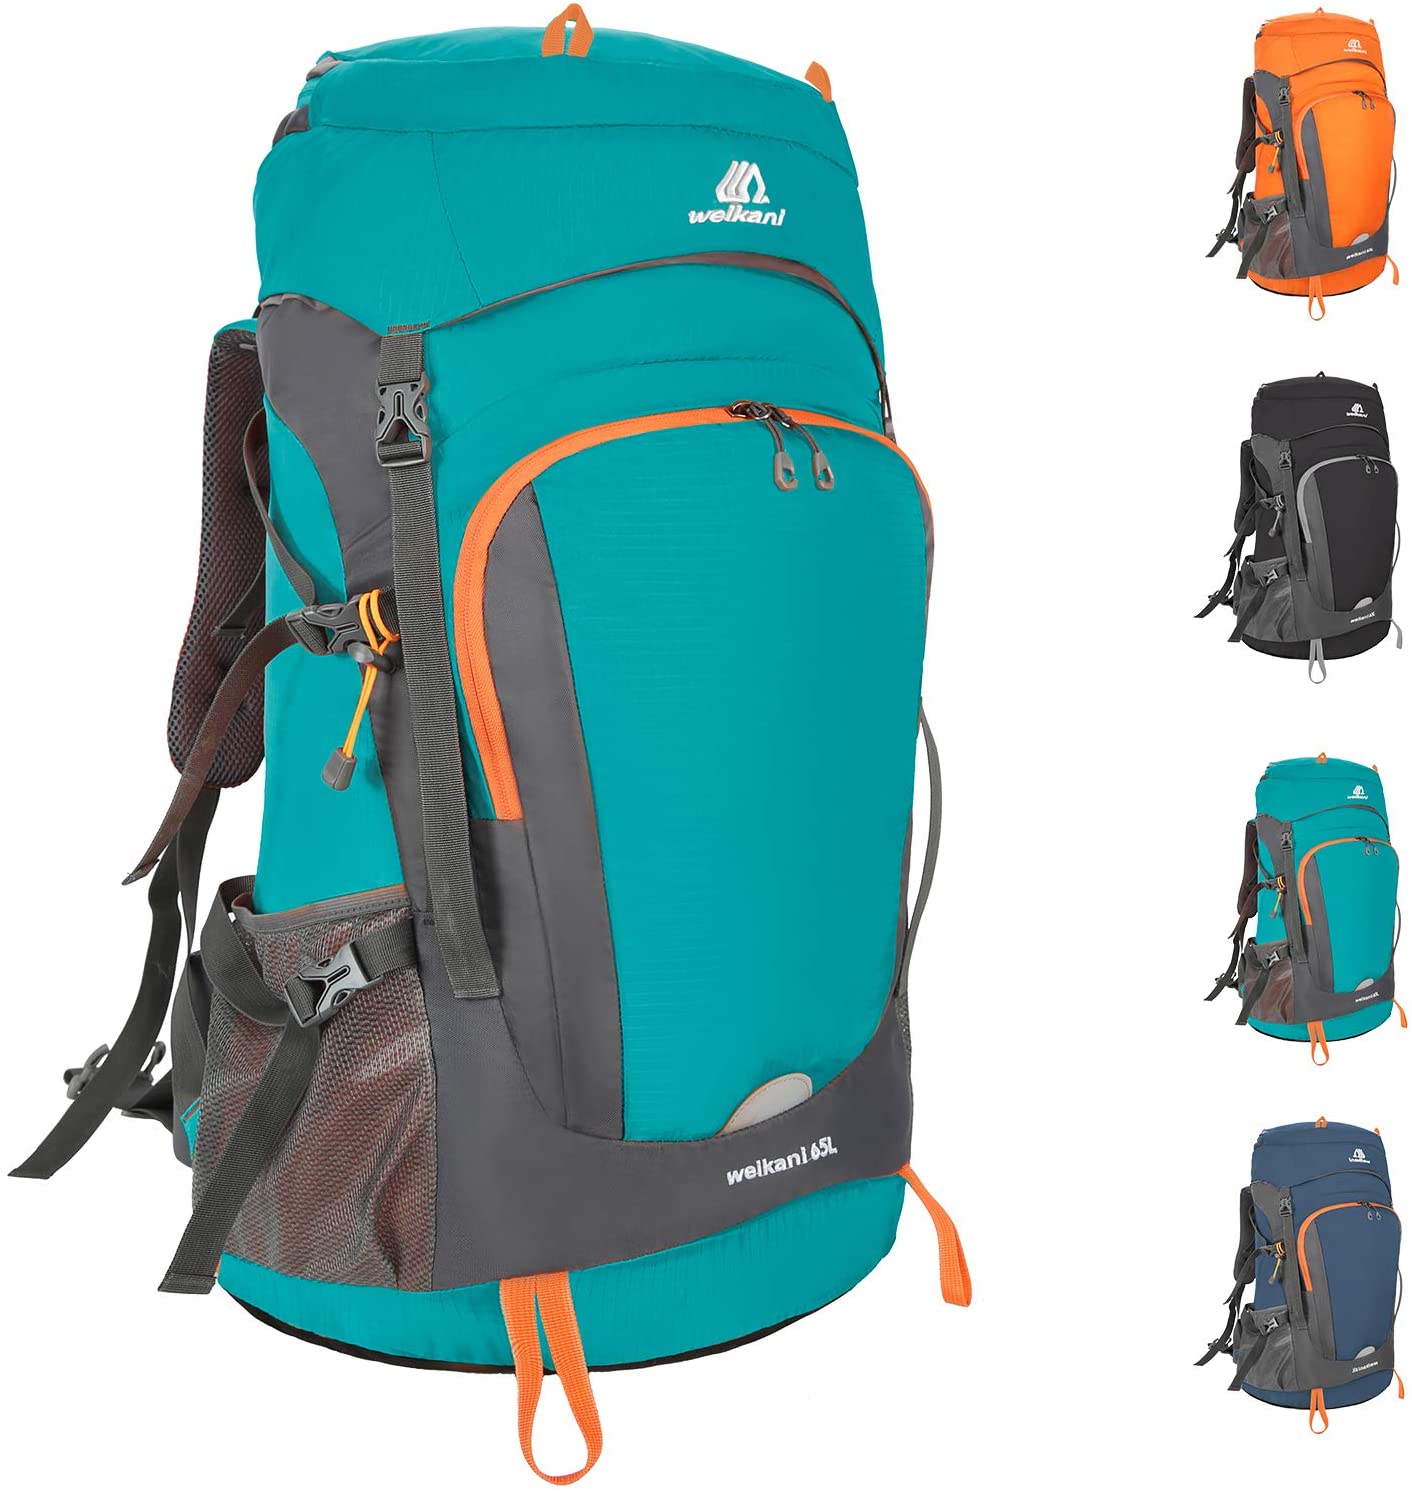 Las mejores mochilas de montaña, acampada y senderismo